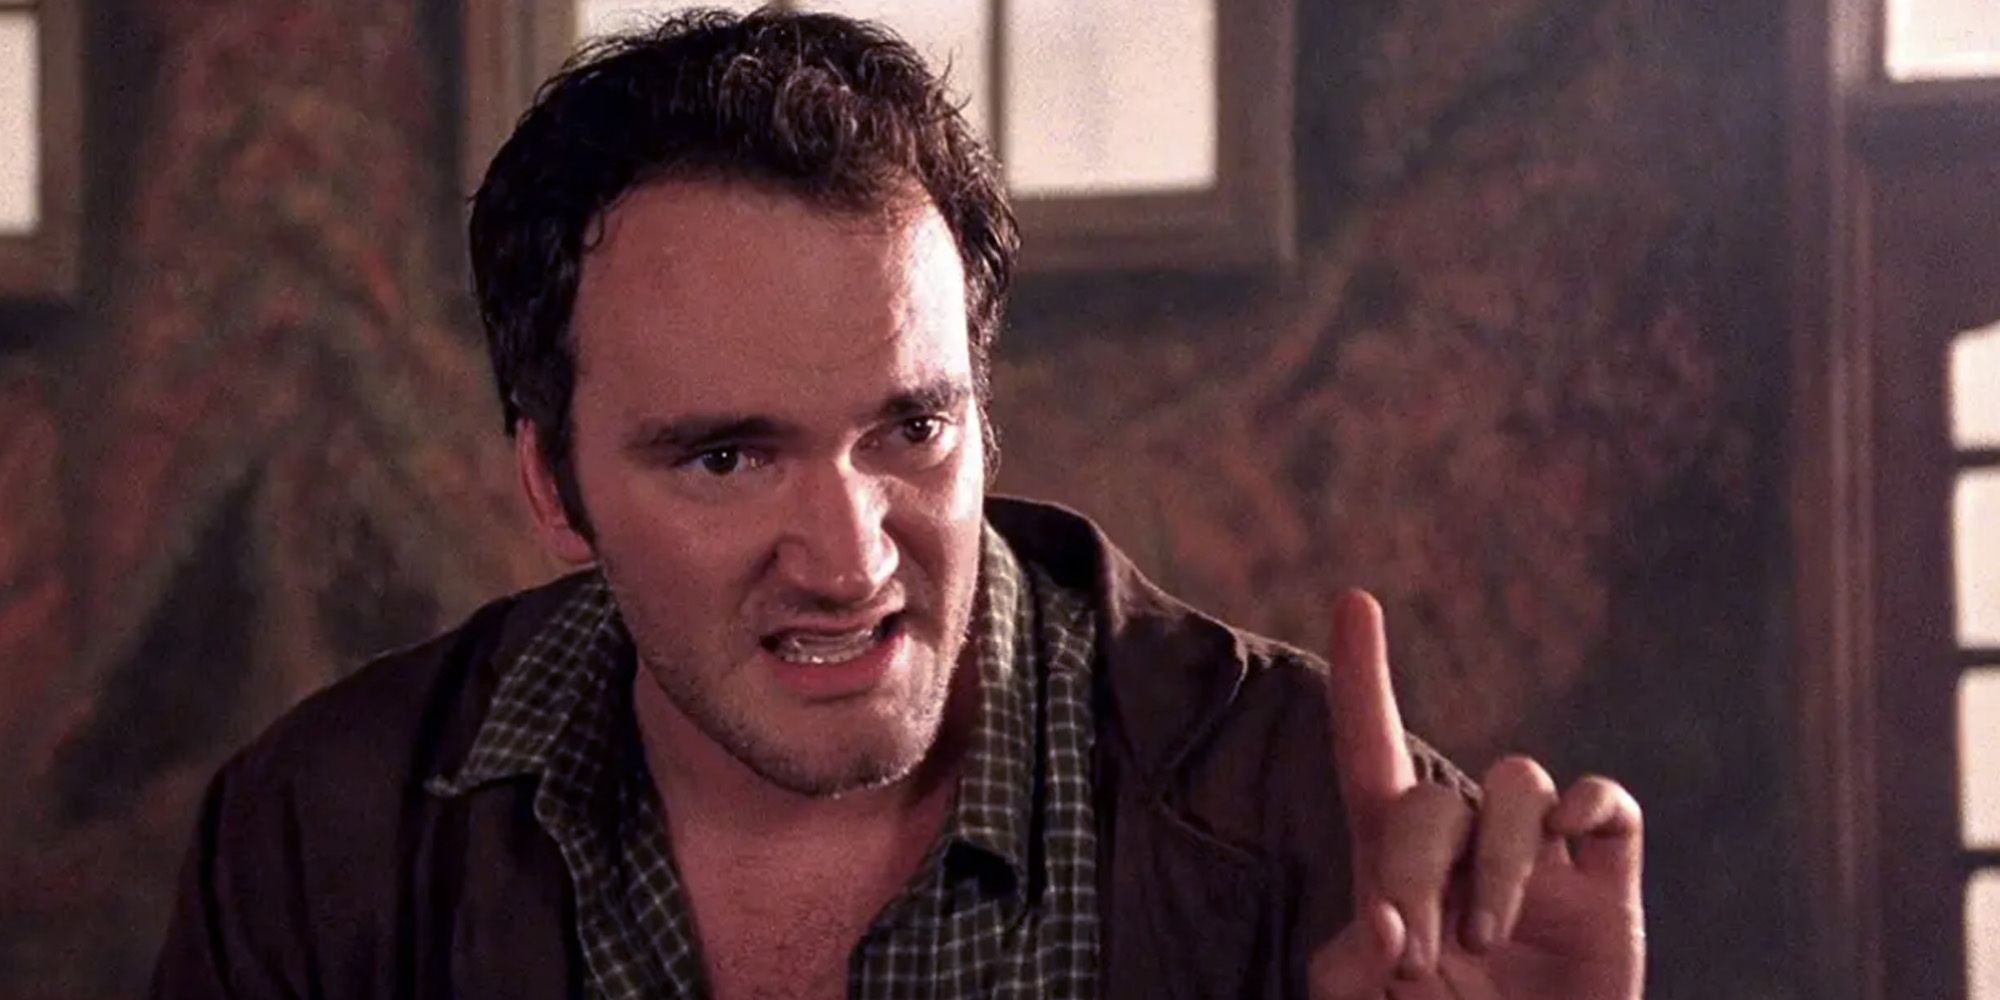 Las quejas de Tarantino sobre Disney resurgen después del dominio del teatro Doctor Strange